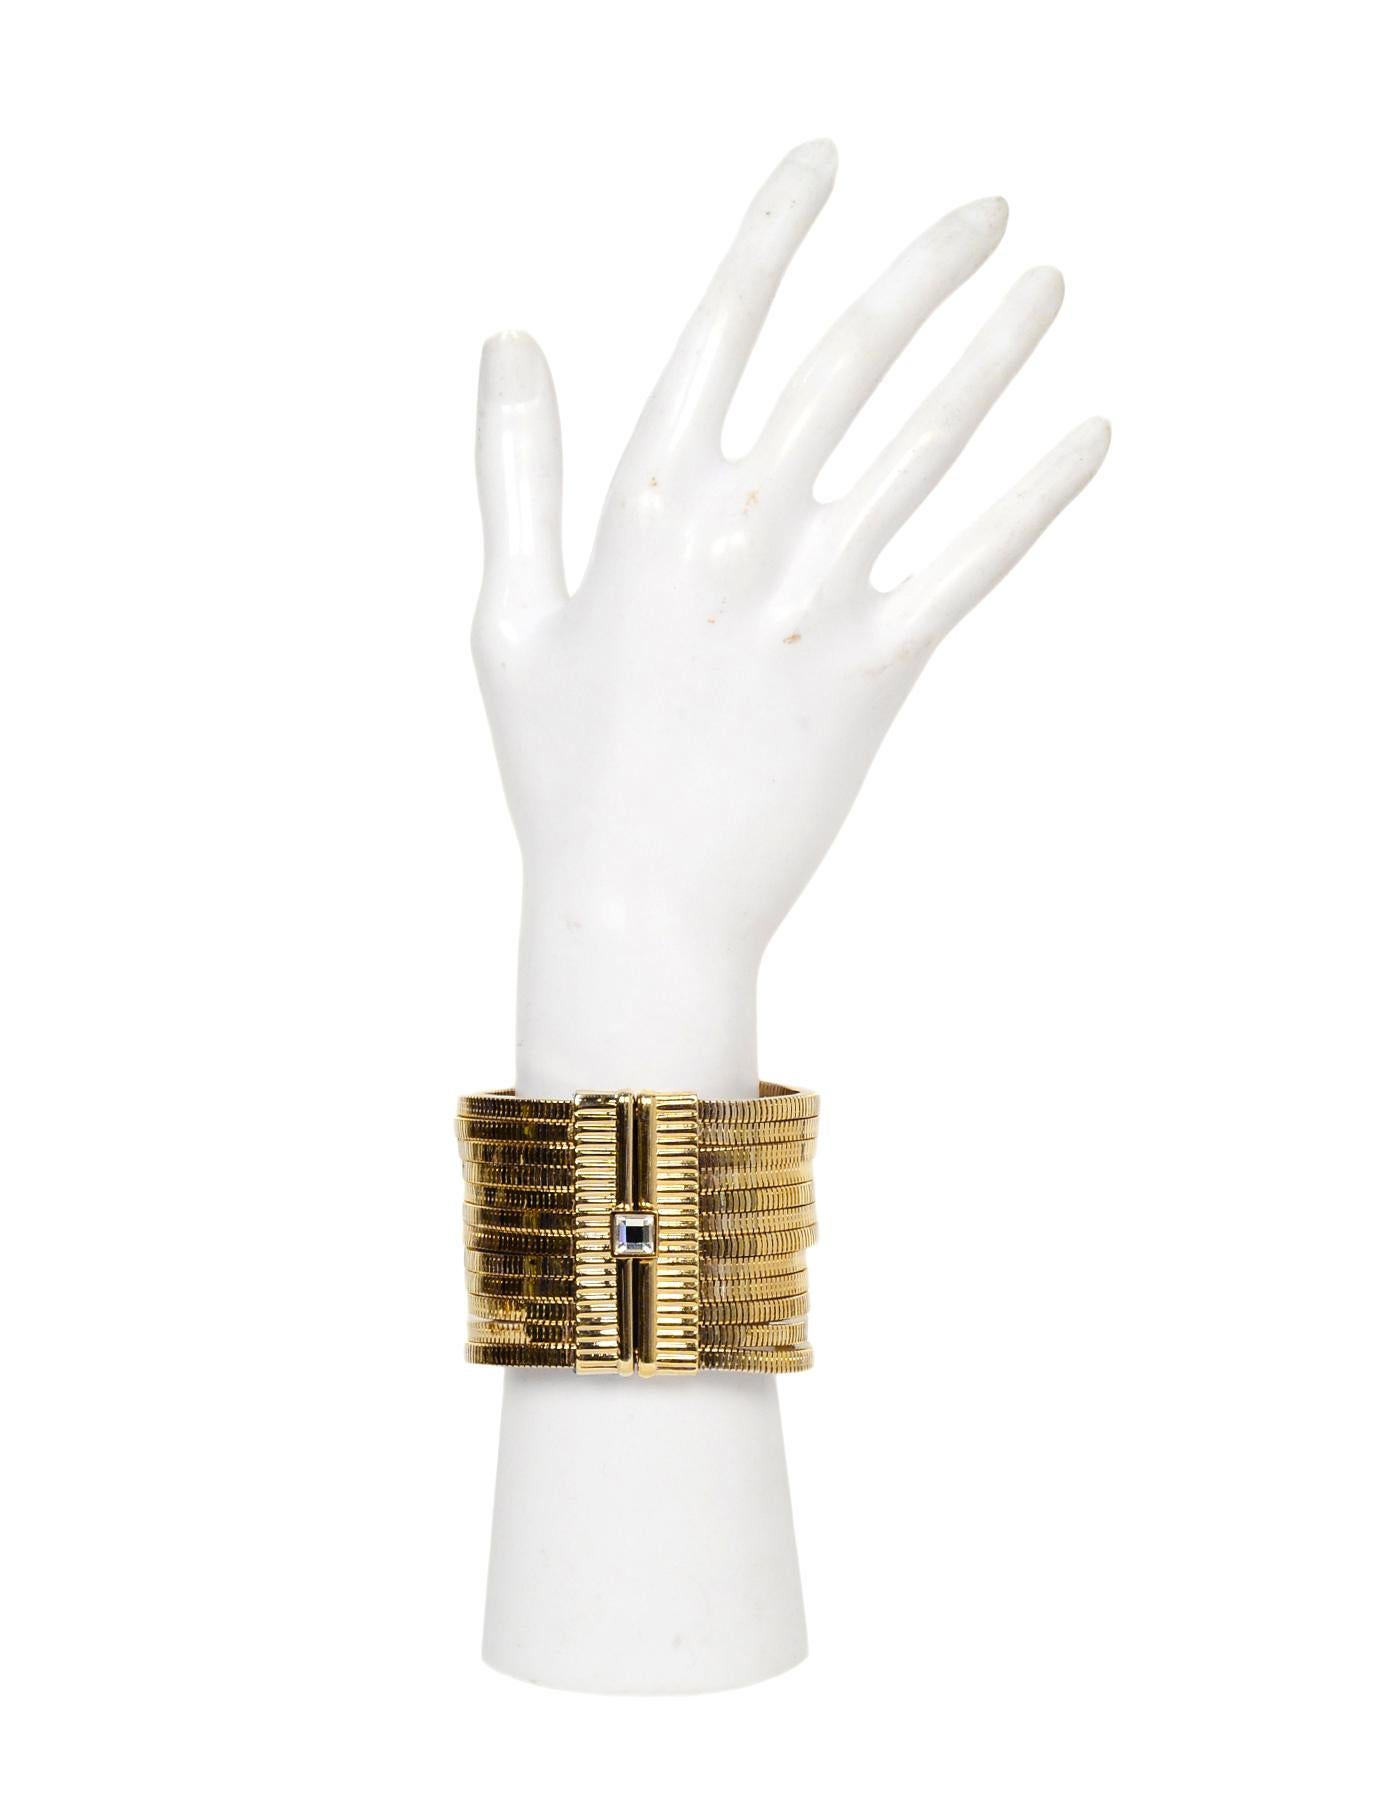 Lanvin Goldtone White Crystal-Embellished Multistrand Snake-Chain Bracelet

Made In: Italy
Color: Gold, white
Materials: Goldtone metal, crystal
Hallmarks: On back hinge- 